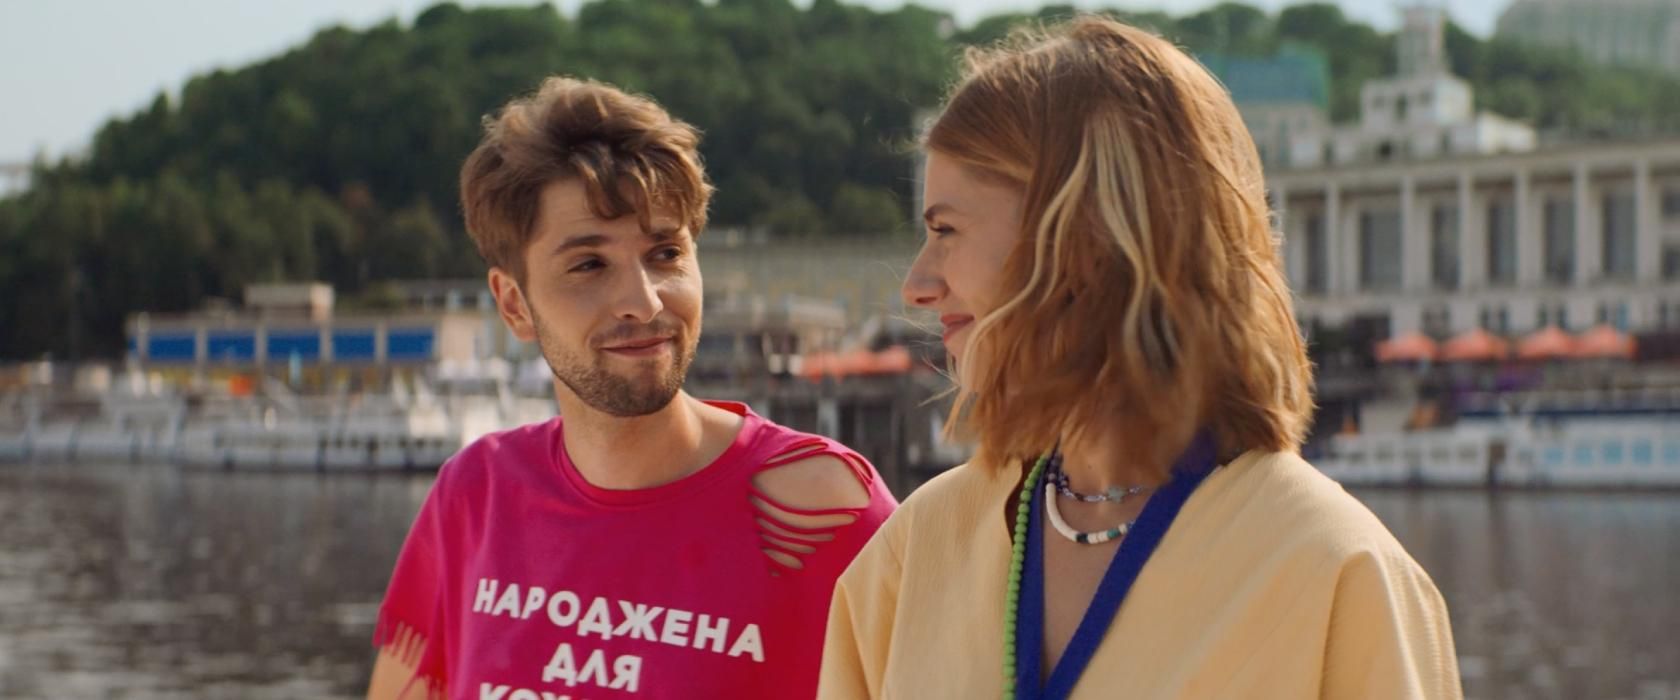 "Лучшие выходные": создатели комедии презентовали новый романтический трейлер